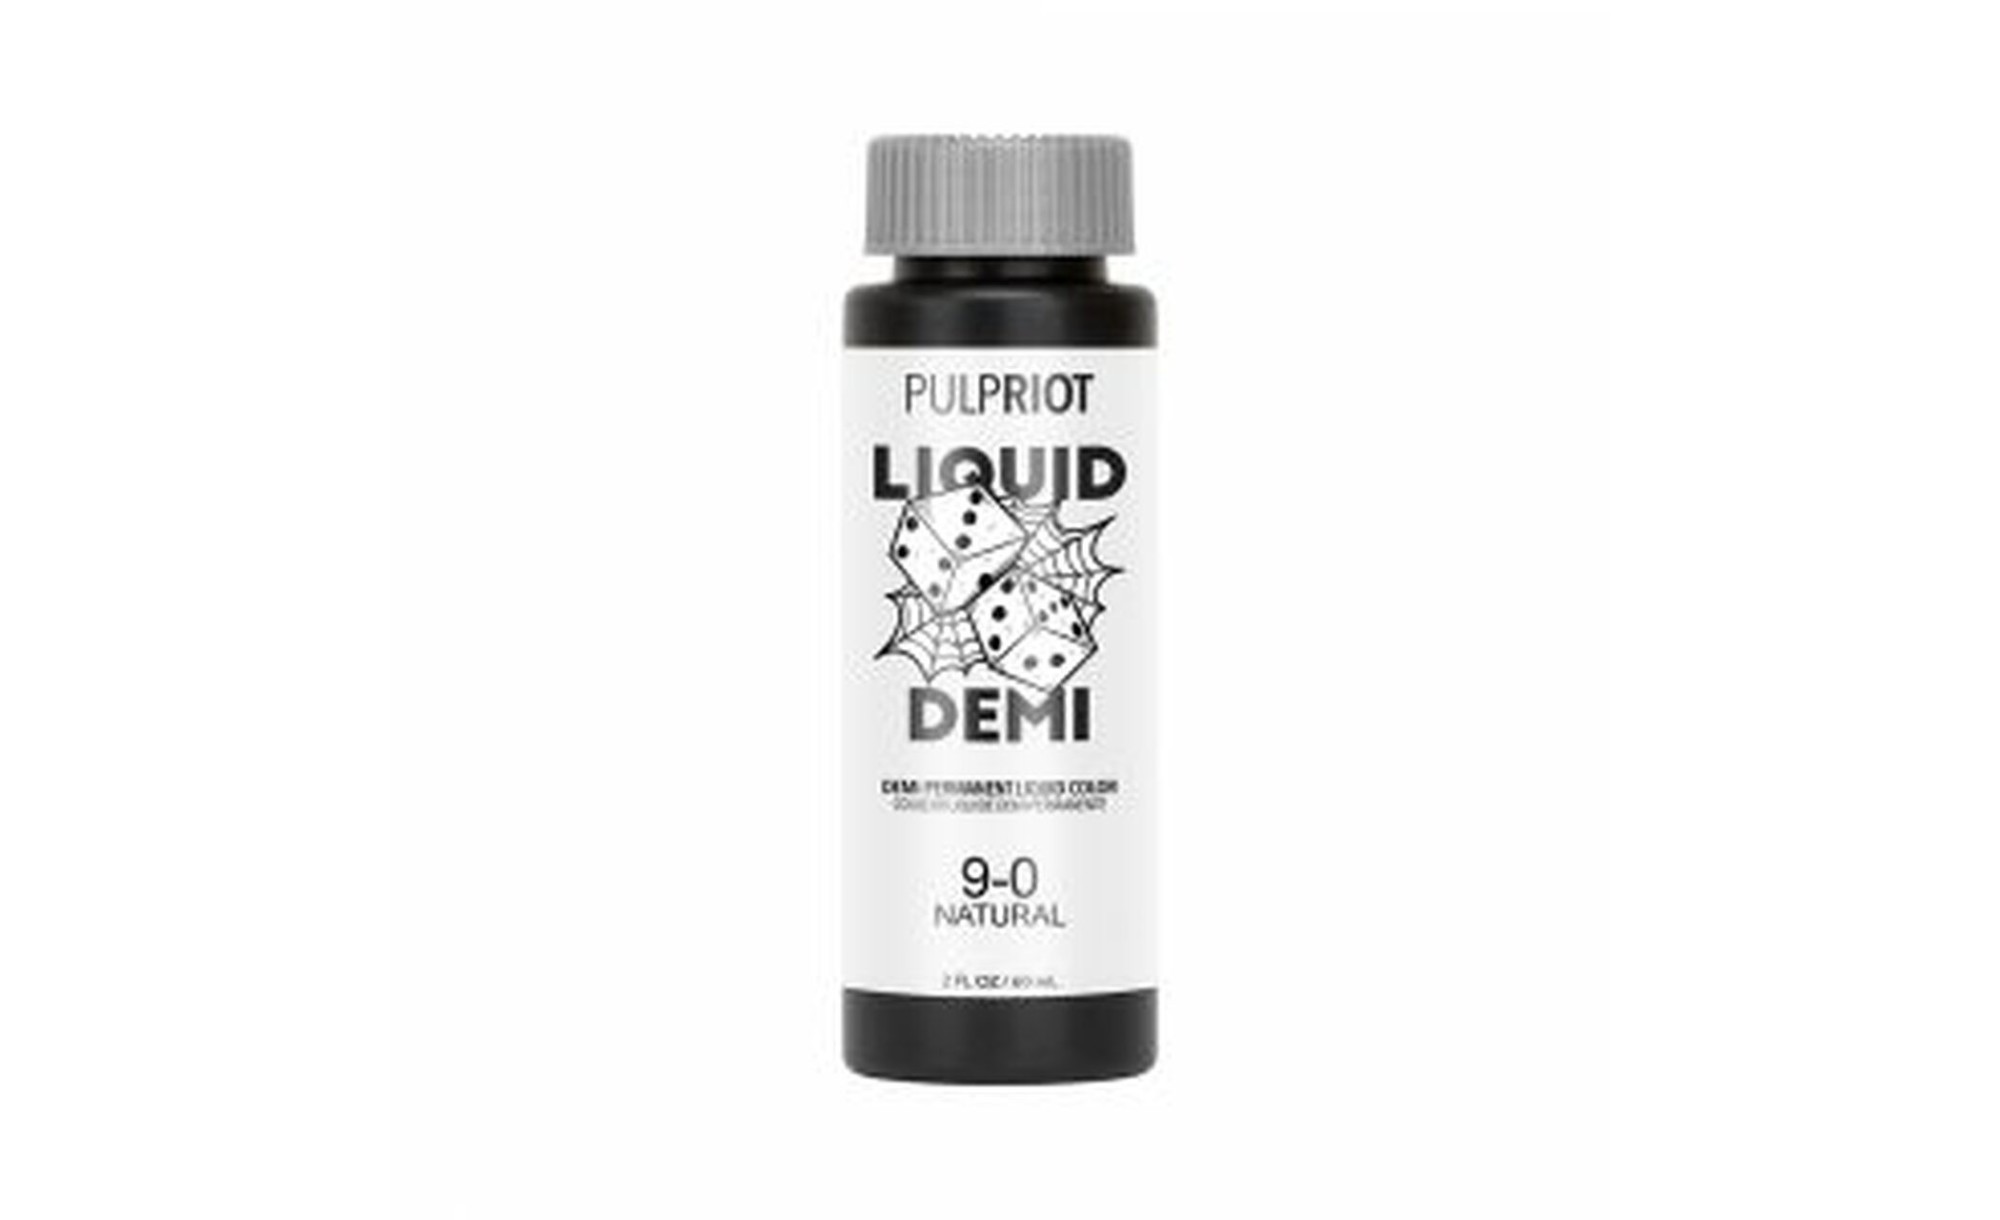 Pulp Riot Liquid Demi Natural 9.0